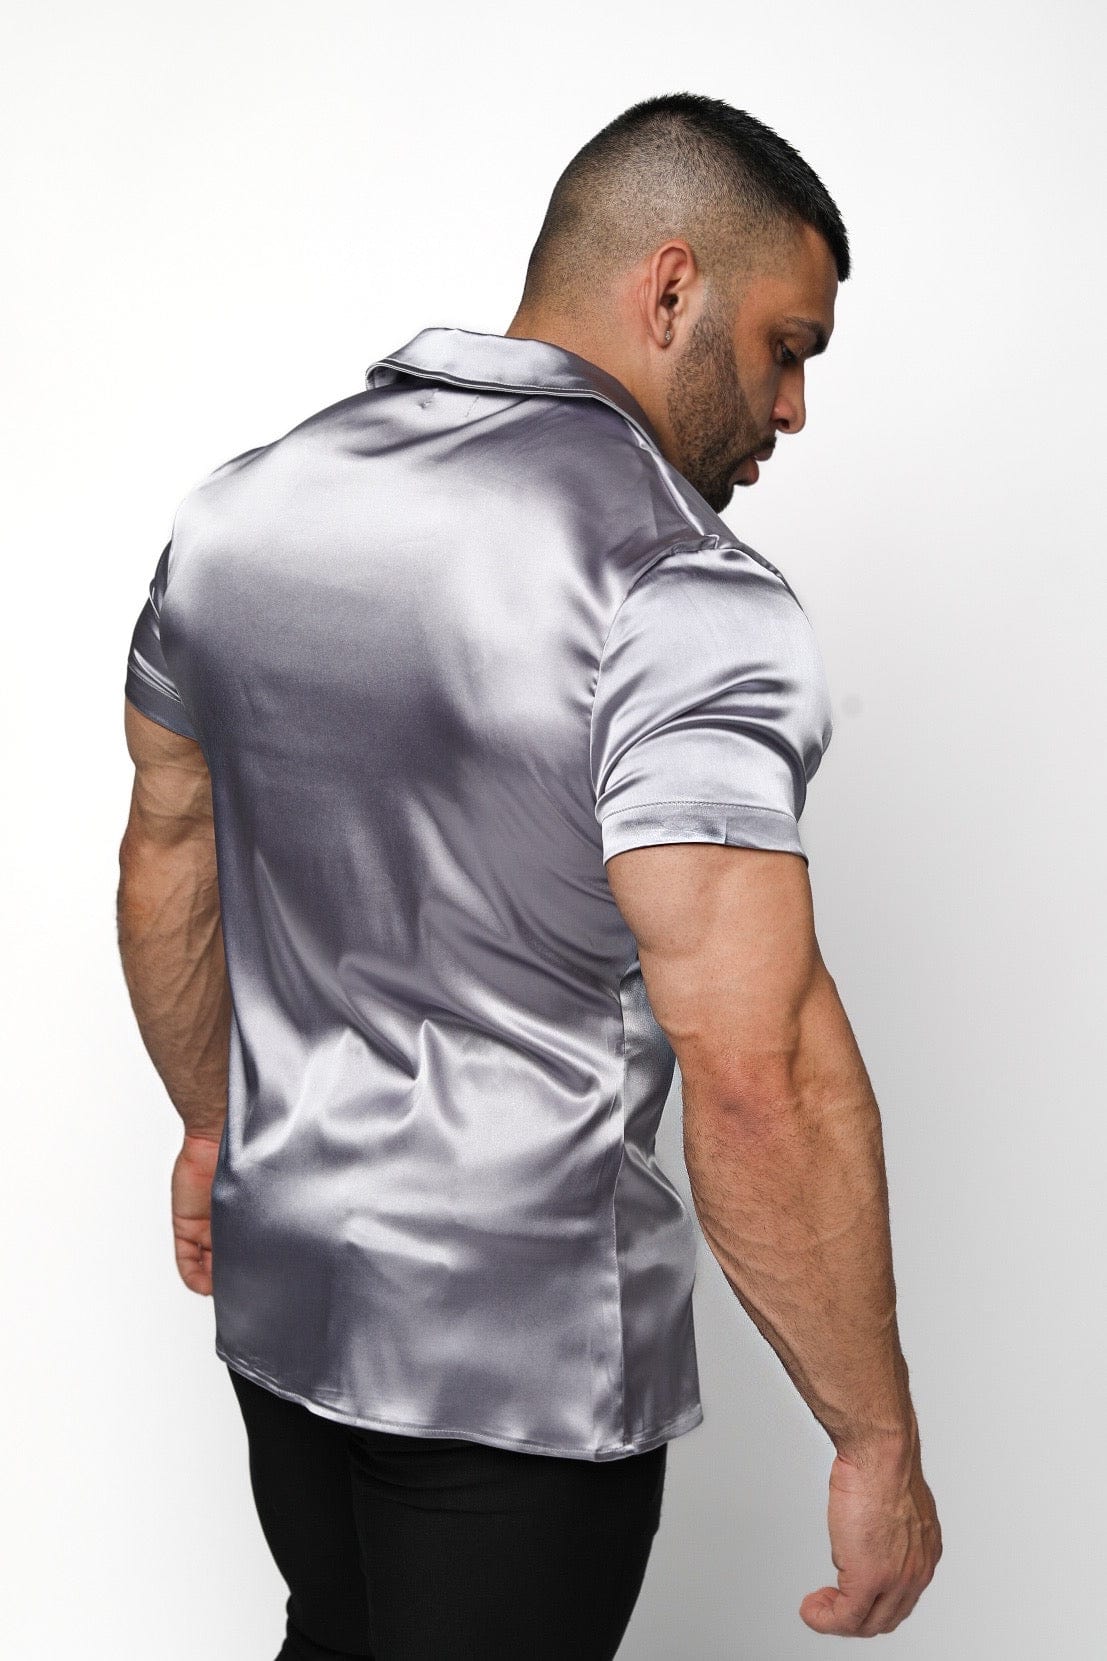 Mens Silver Satin Shirt - Gerardo Collection